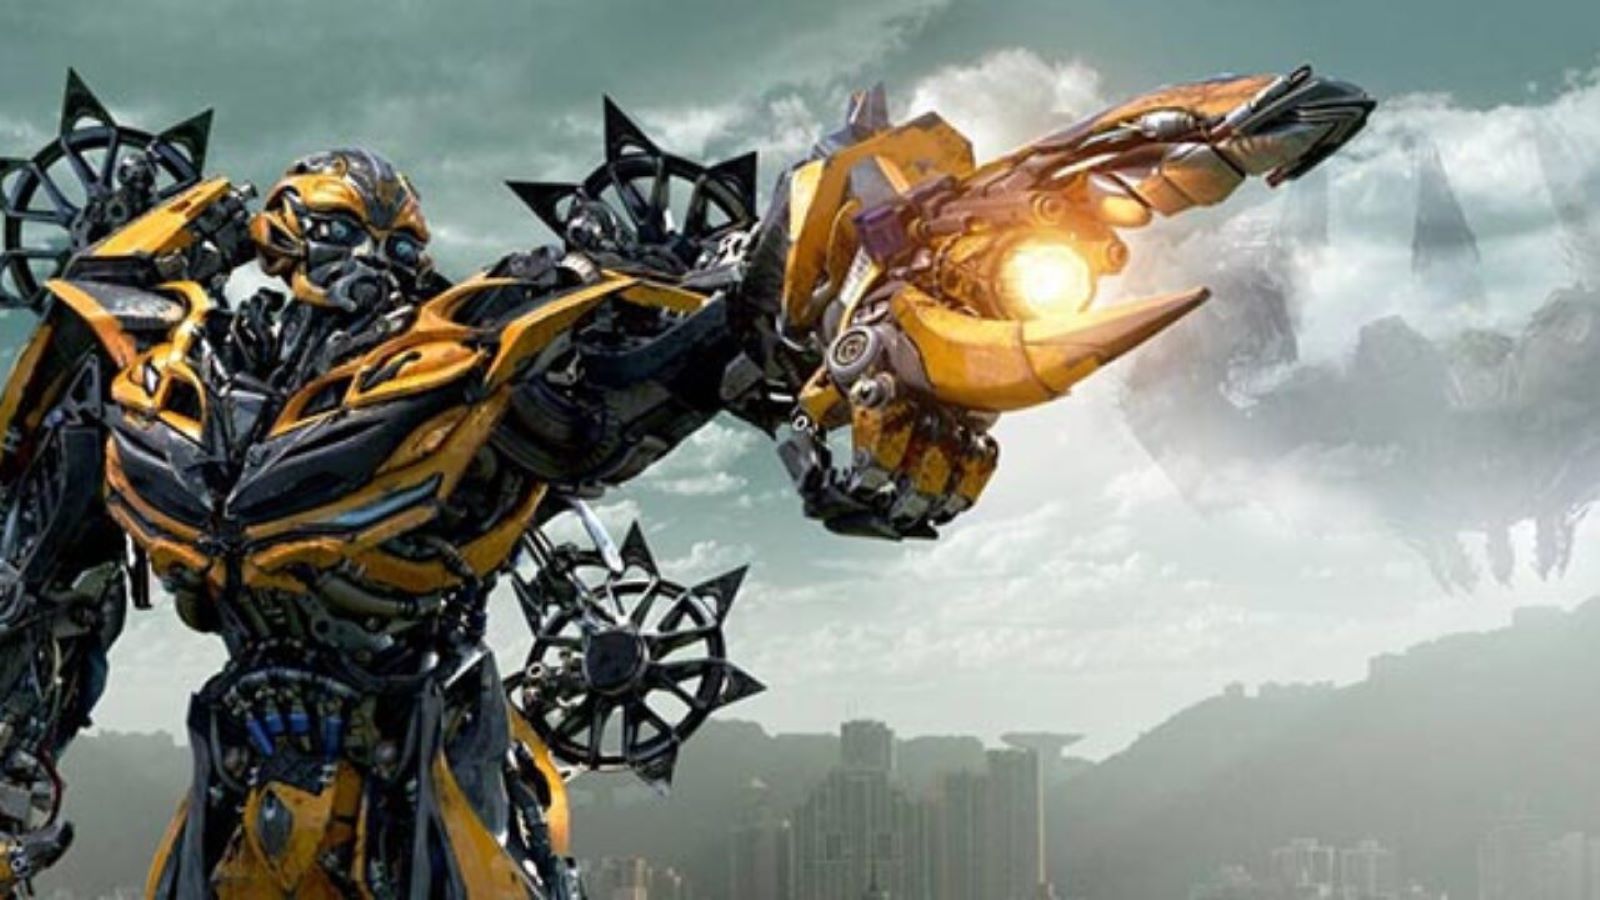 Transformers 4: L'era dell'estinzione su Canale 20 Mediaset, cast e trama del film di Michael Bay